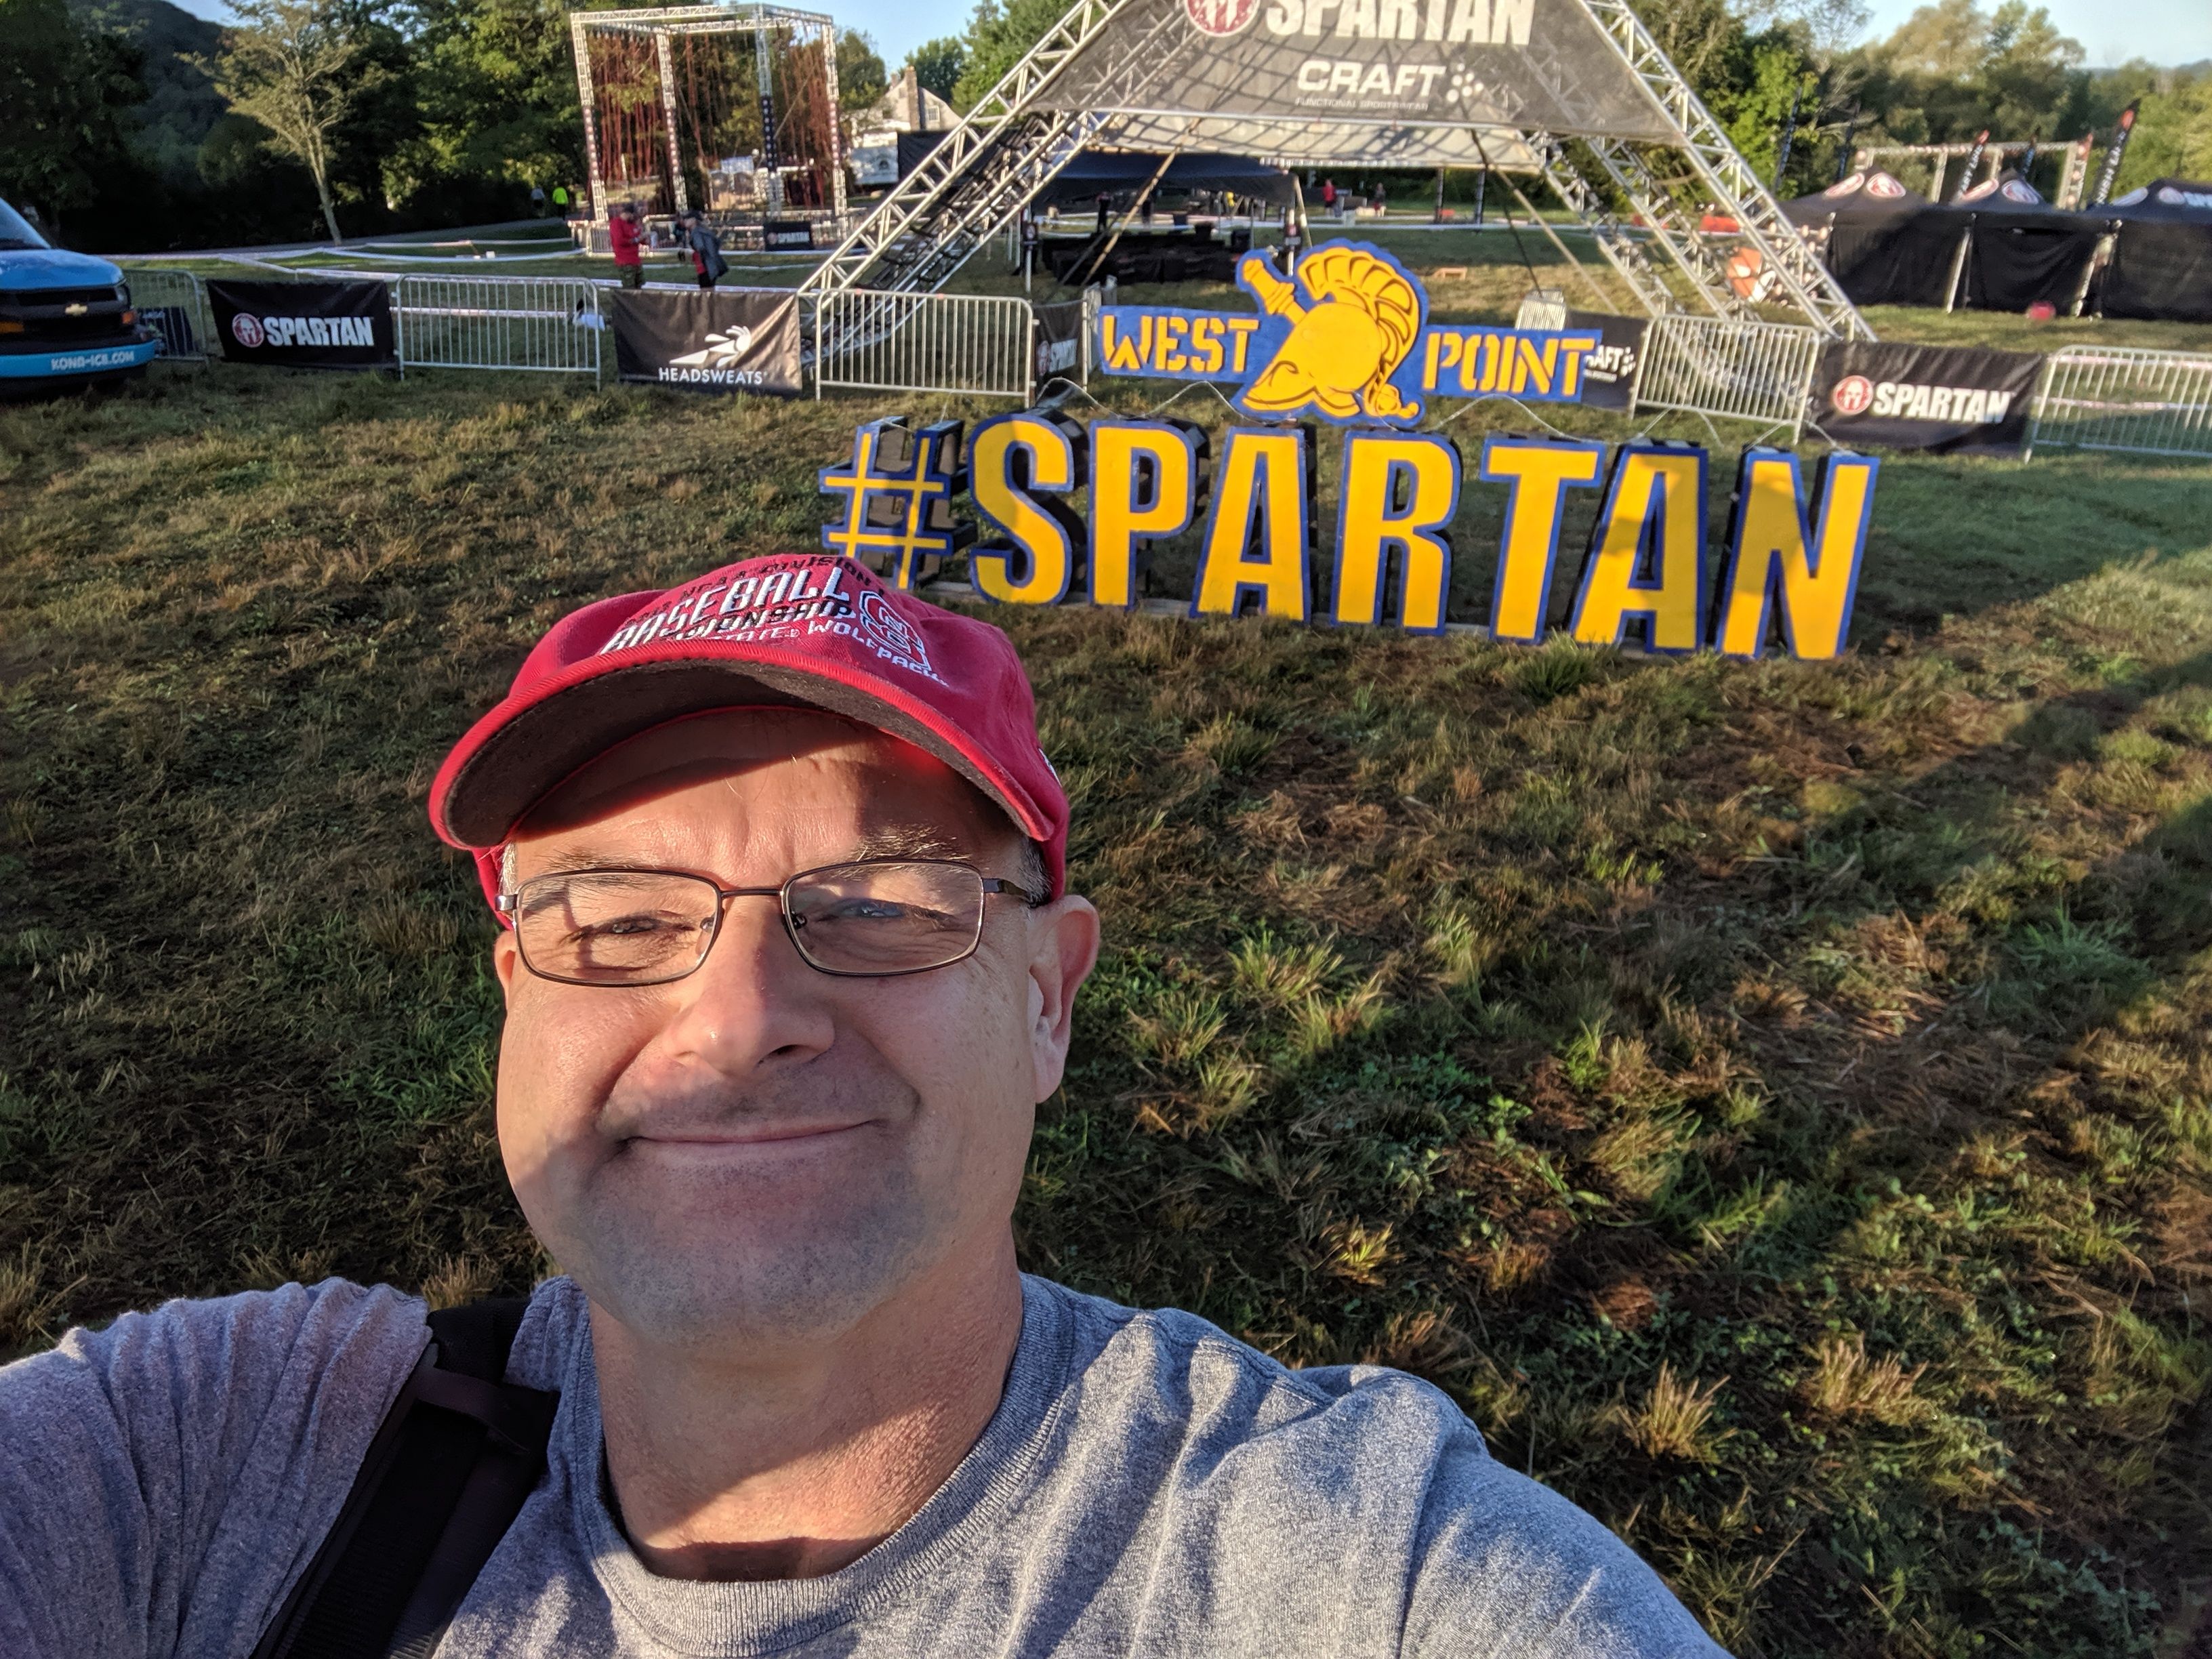 West Point Spartan Sprint 2019